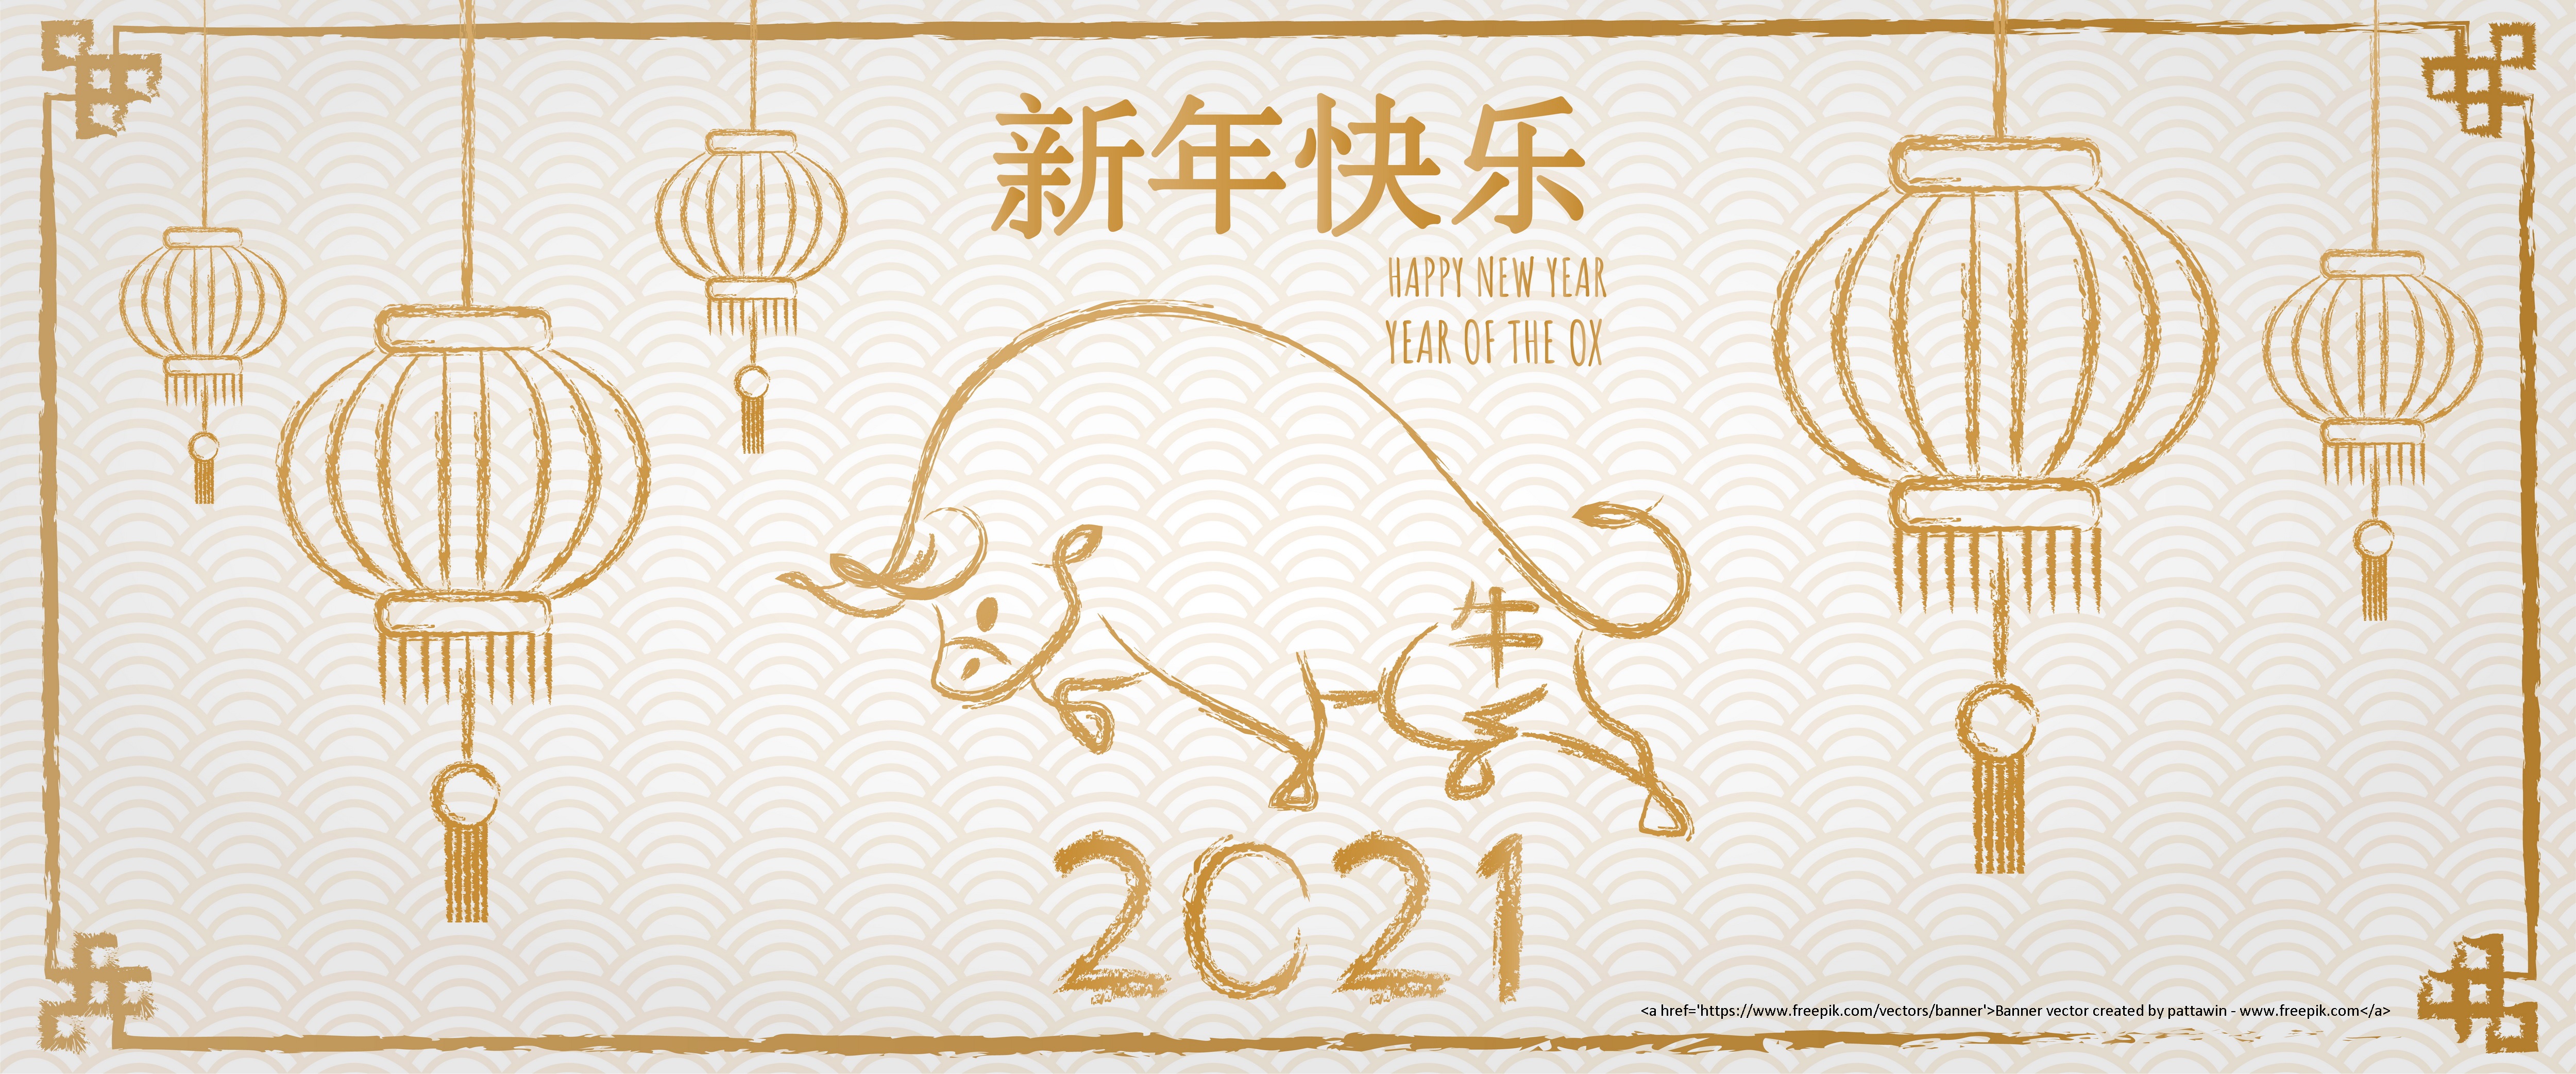 2021 Lunar New Year holiday